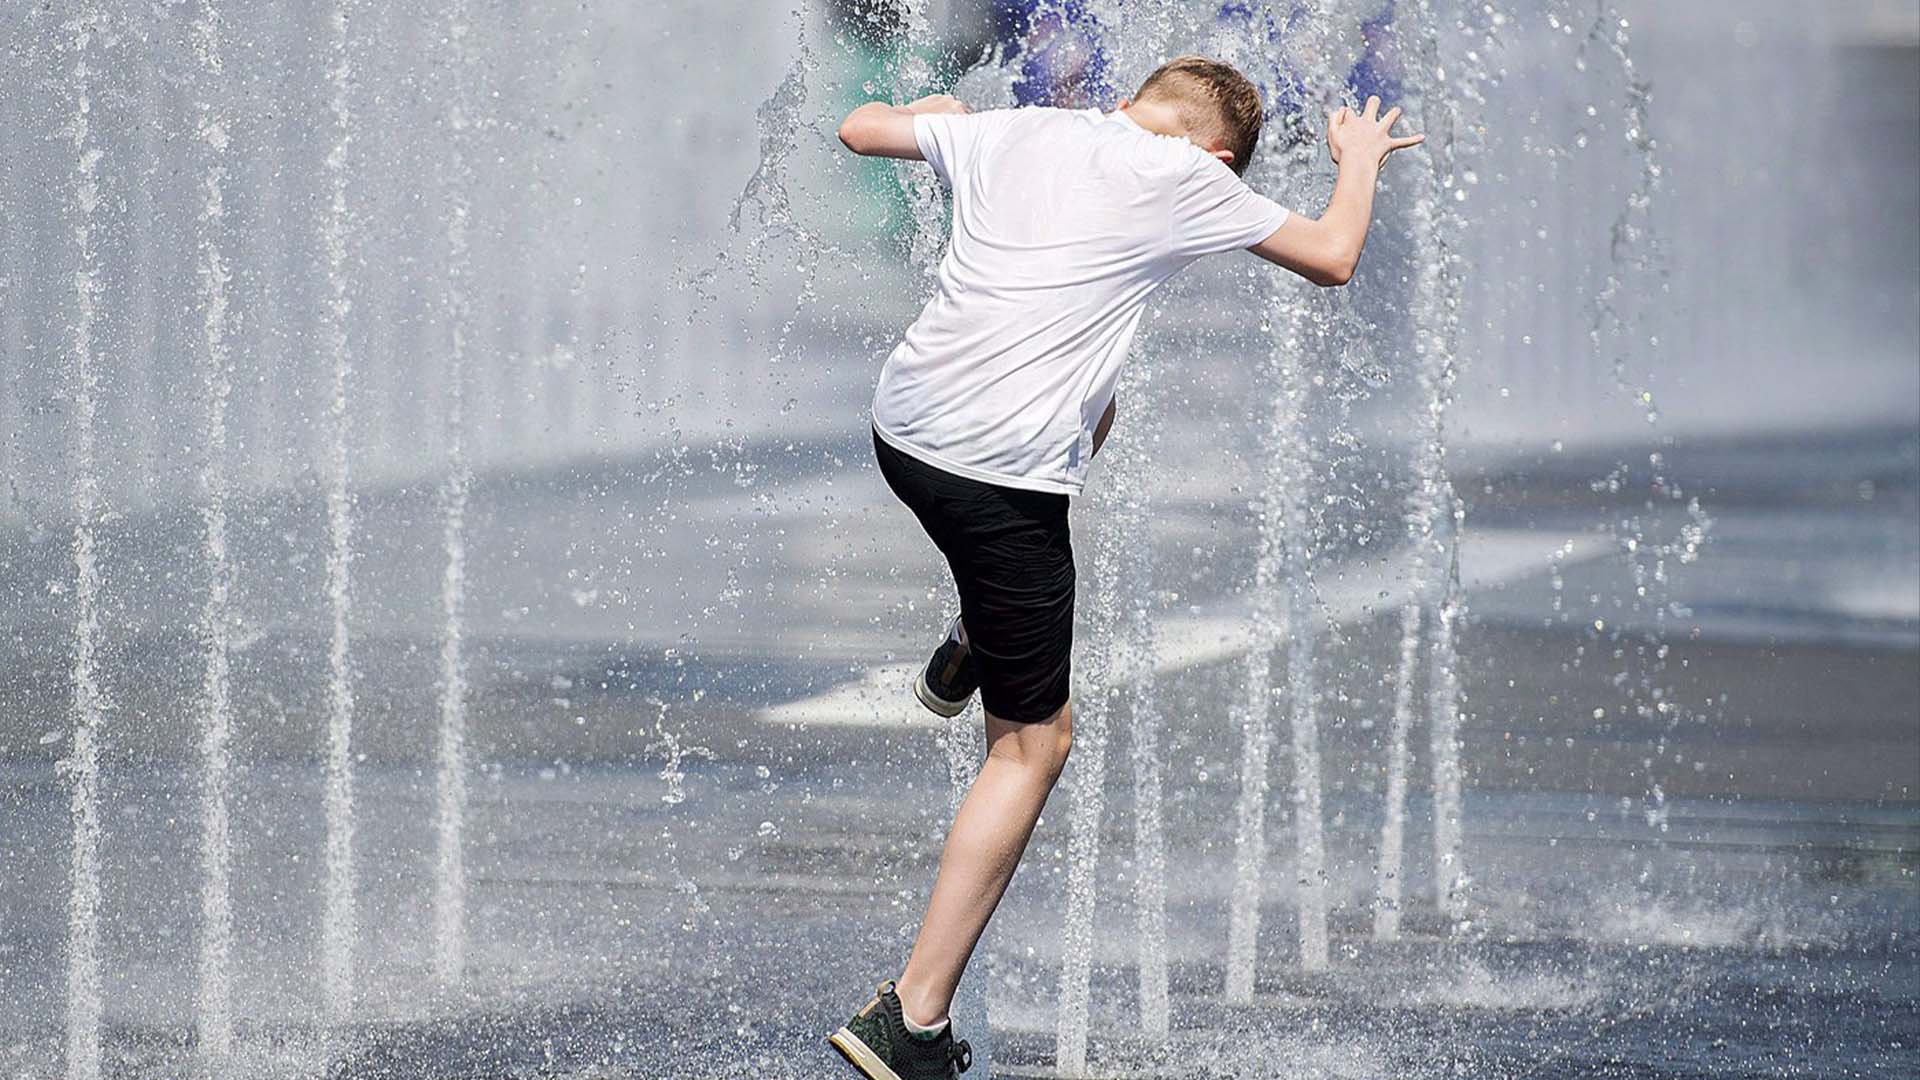 Un garçon se rafraîchit dans une fontaine d'eau alors qu'il combat la chaleur à Montréal, le lundi 2 juillet 2018.